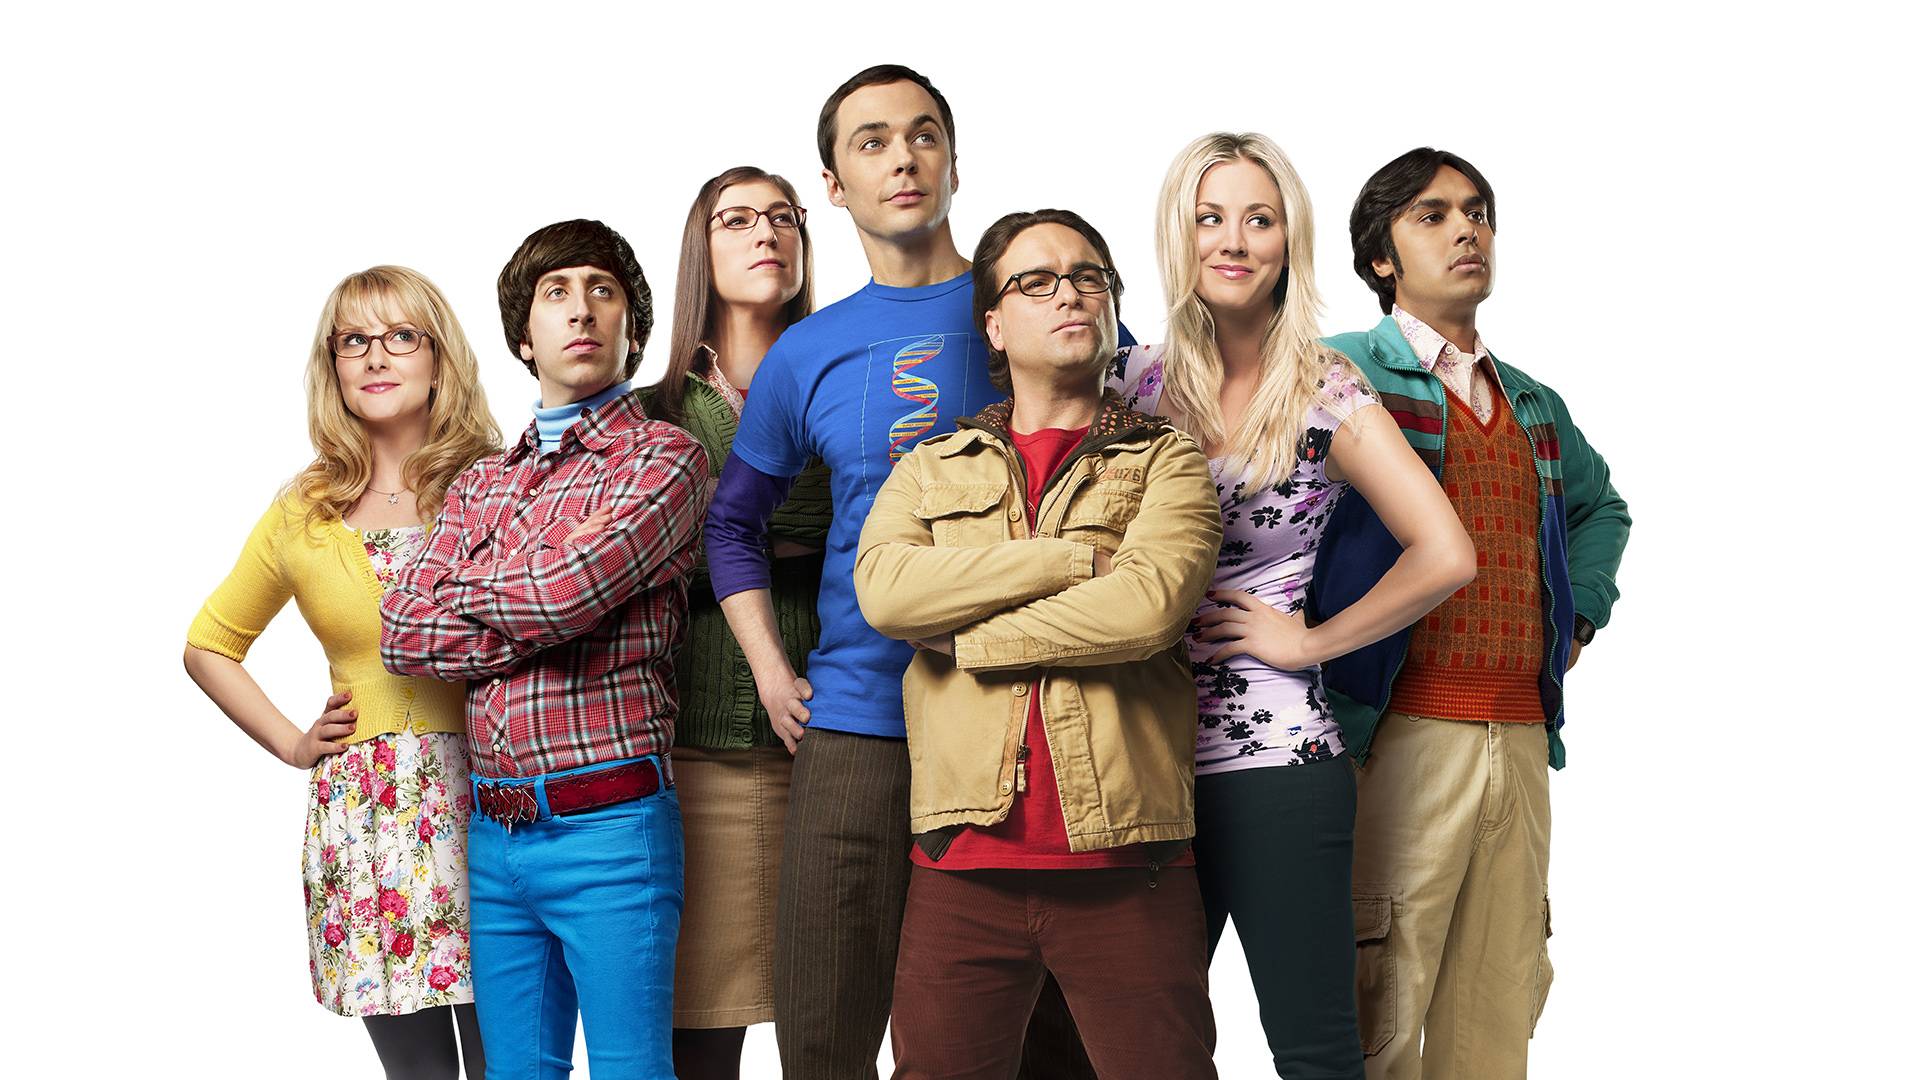 49+] Big Bang Theory Desktop Wallpaper - WallpaperSafari